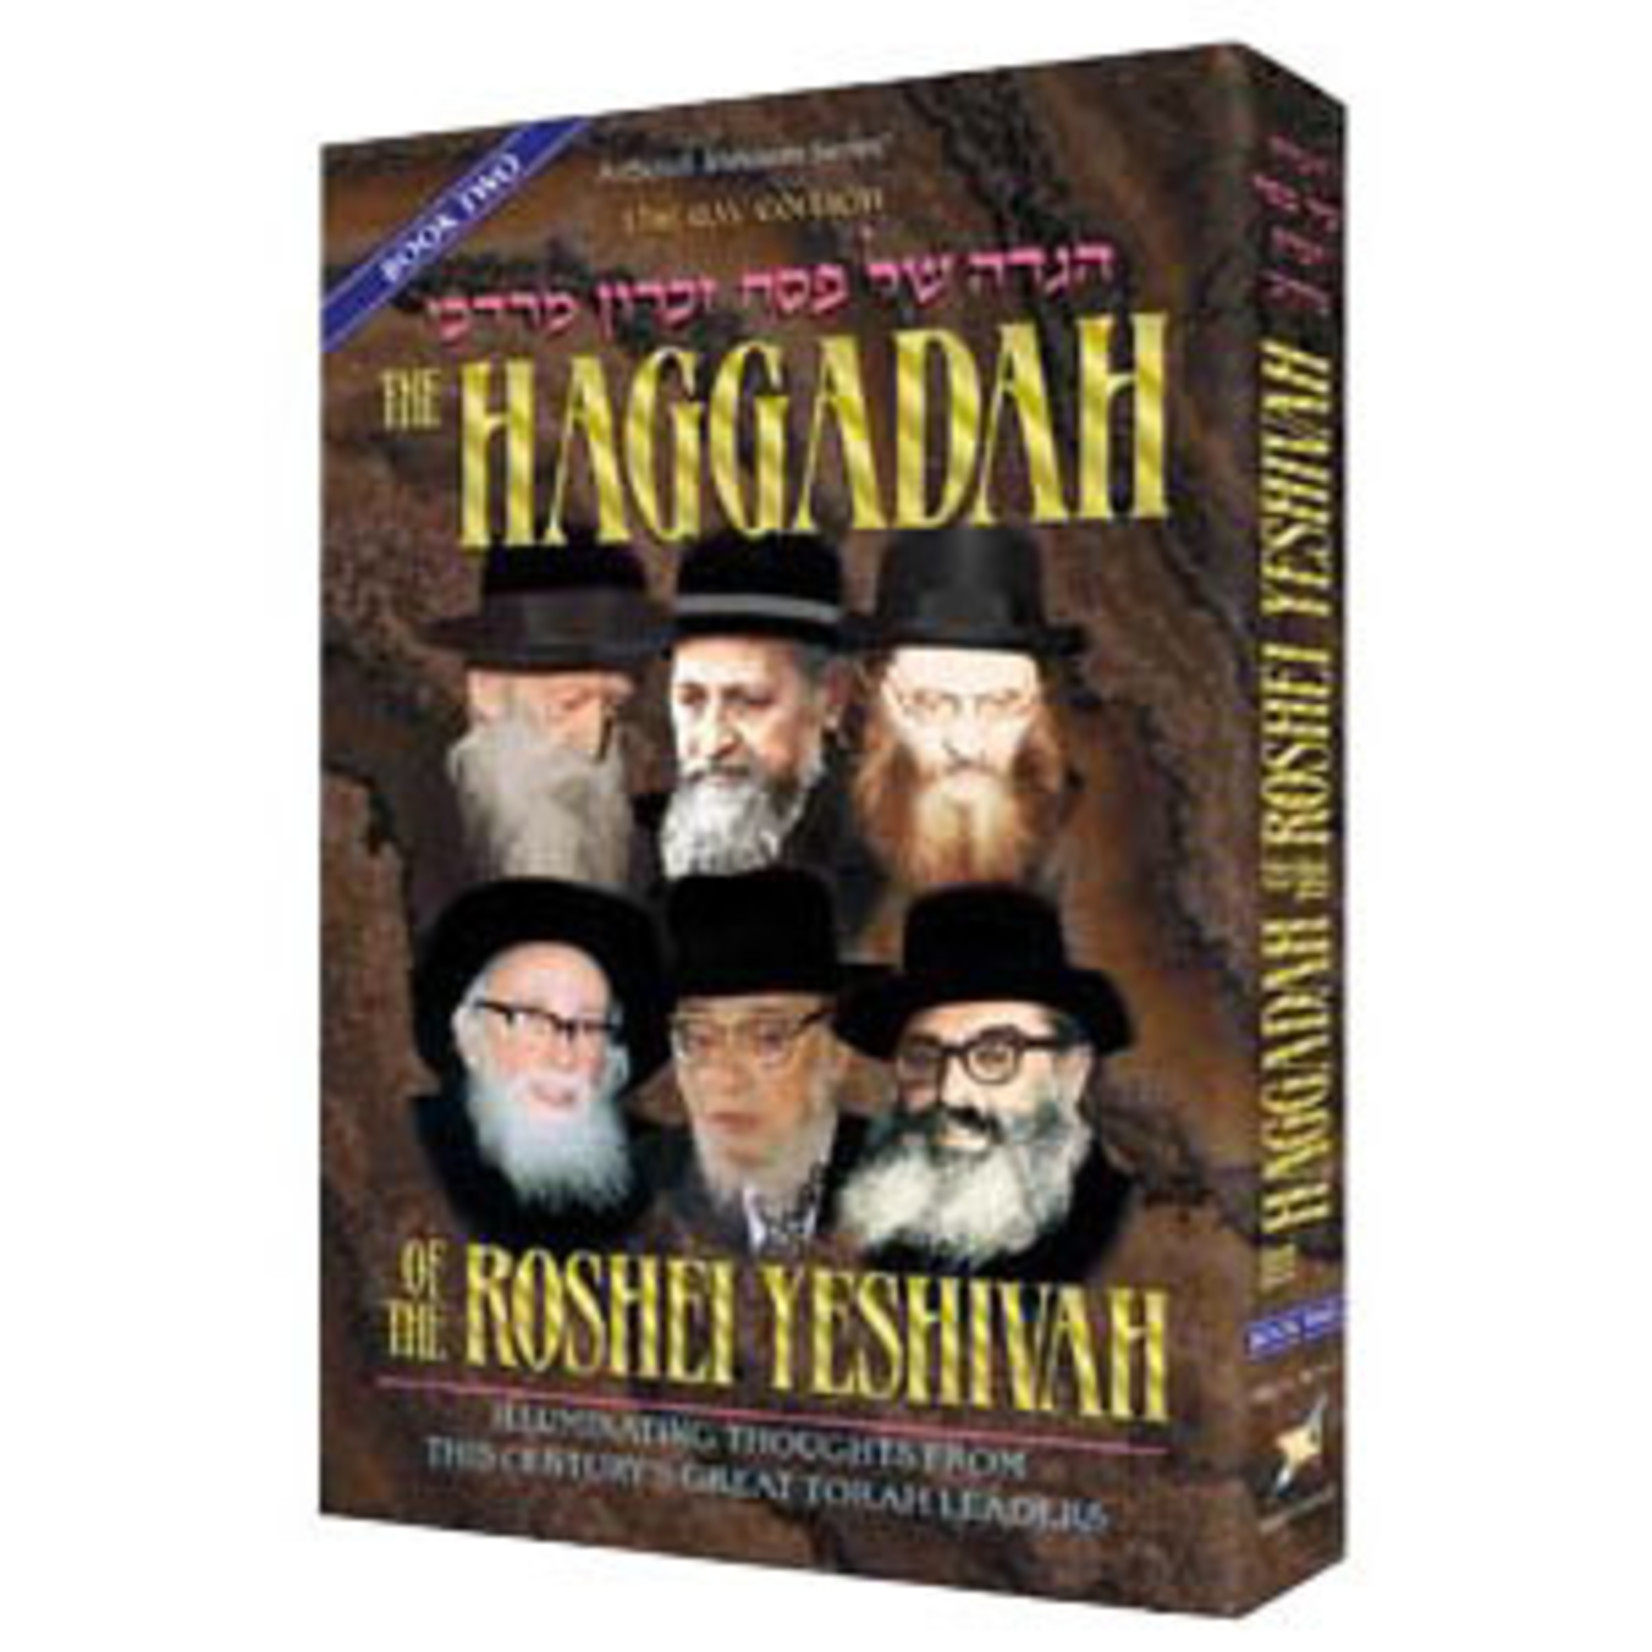 Haggadah of the Roshei Yeshiva - vol 2